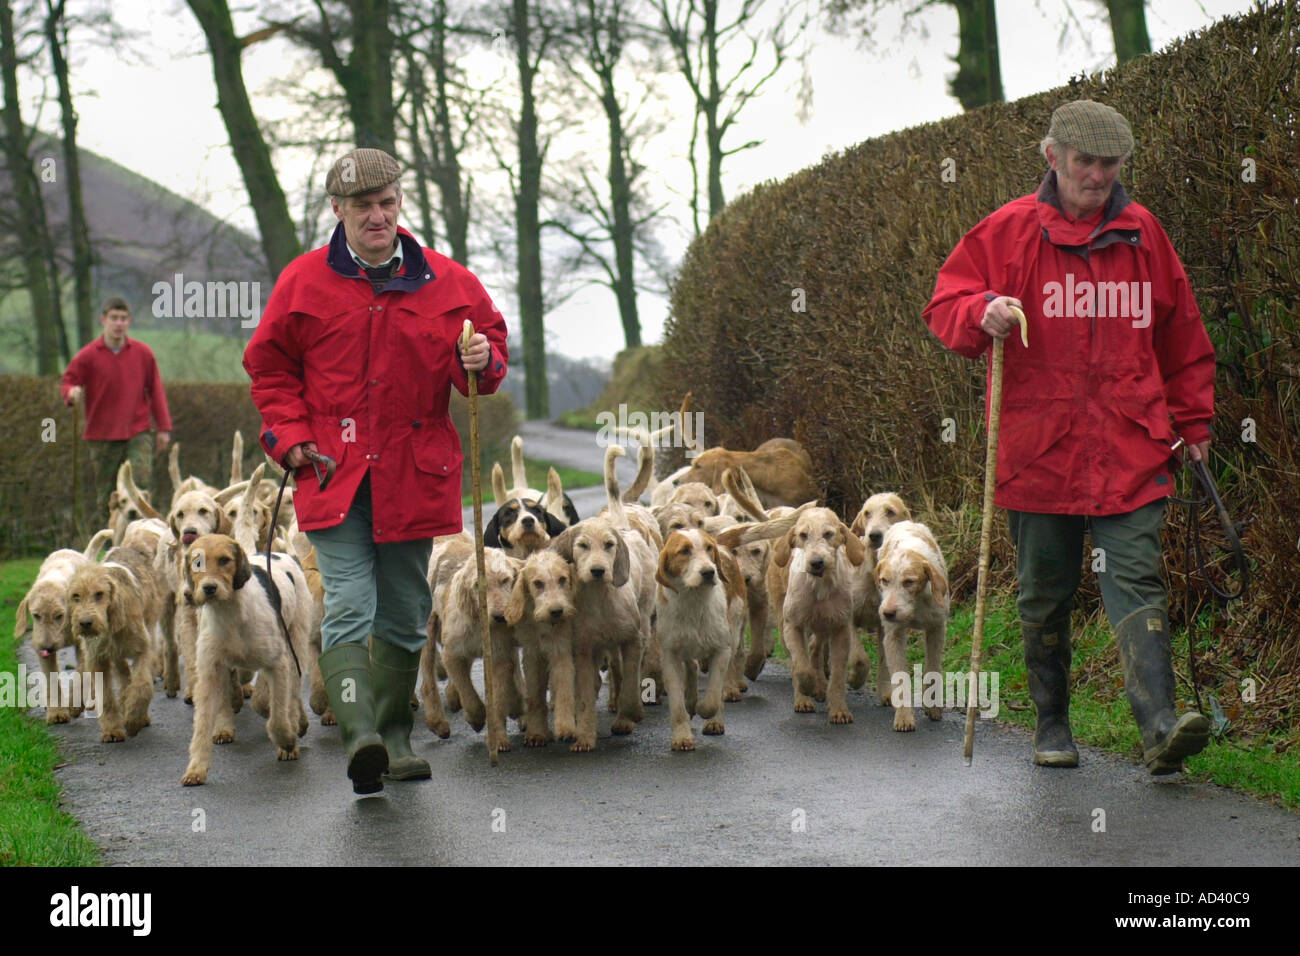 Les Maîtres de l'Irfon Towy chasser hors l'exercice de leurs chiens de chasse sur les terres agricoles près de Llanwrtyd Wells Powys Pays de Galles UK Banque D'Images